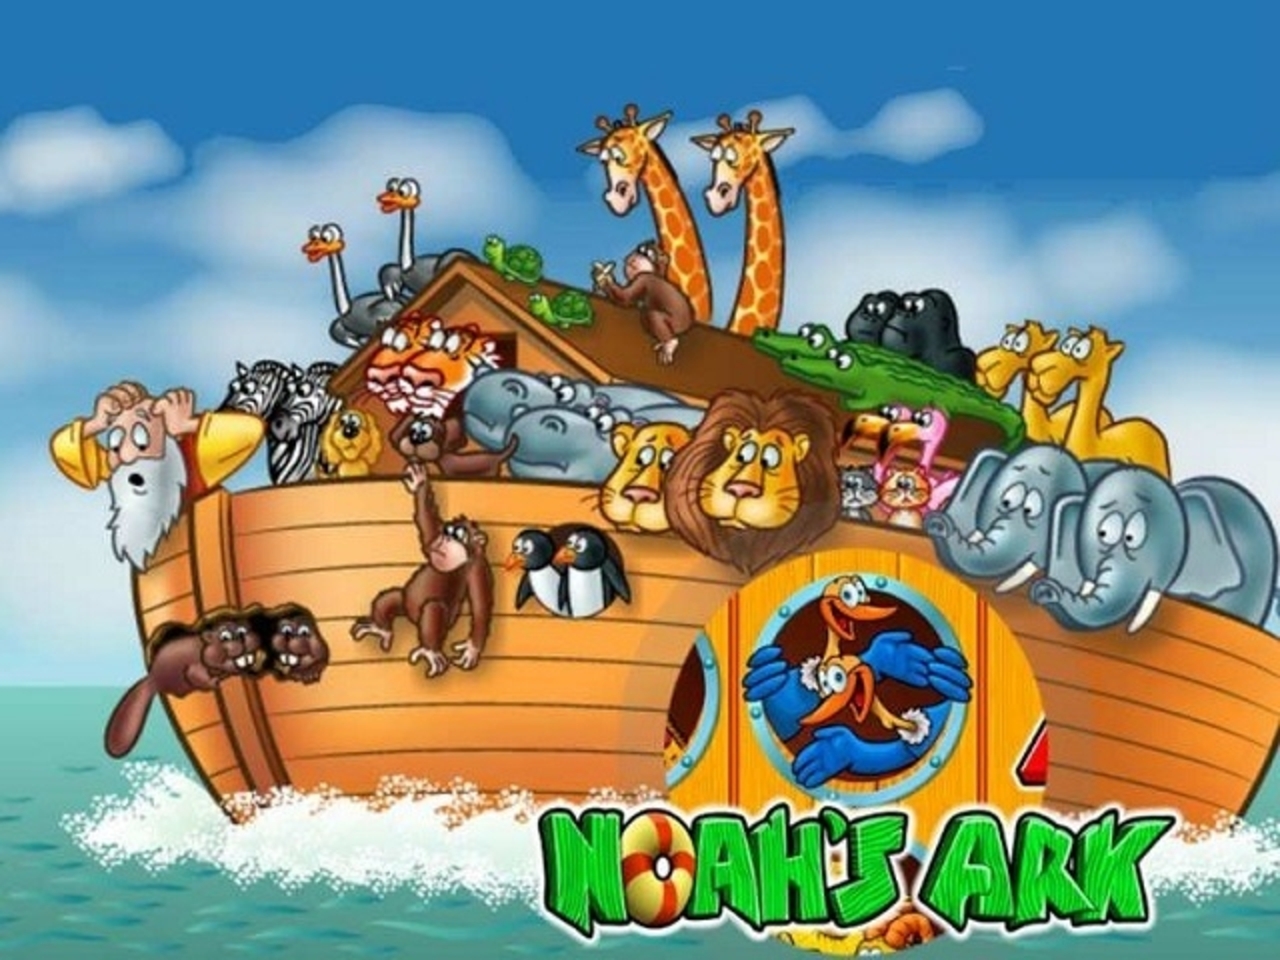 Noah's Ark demo